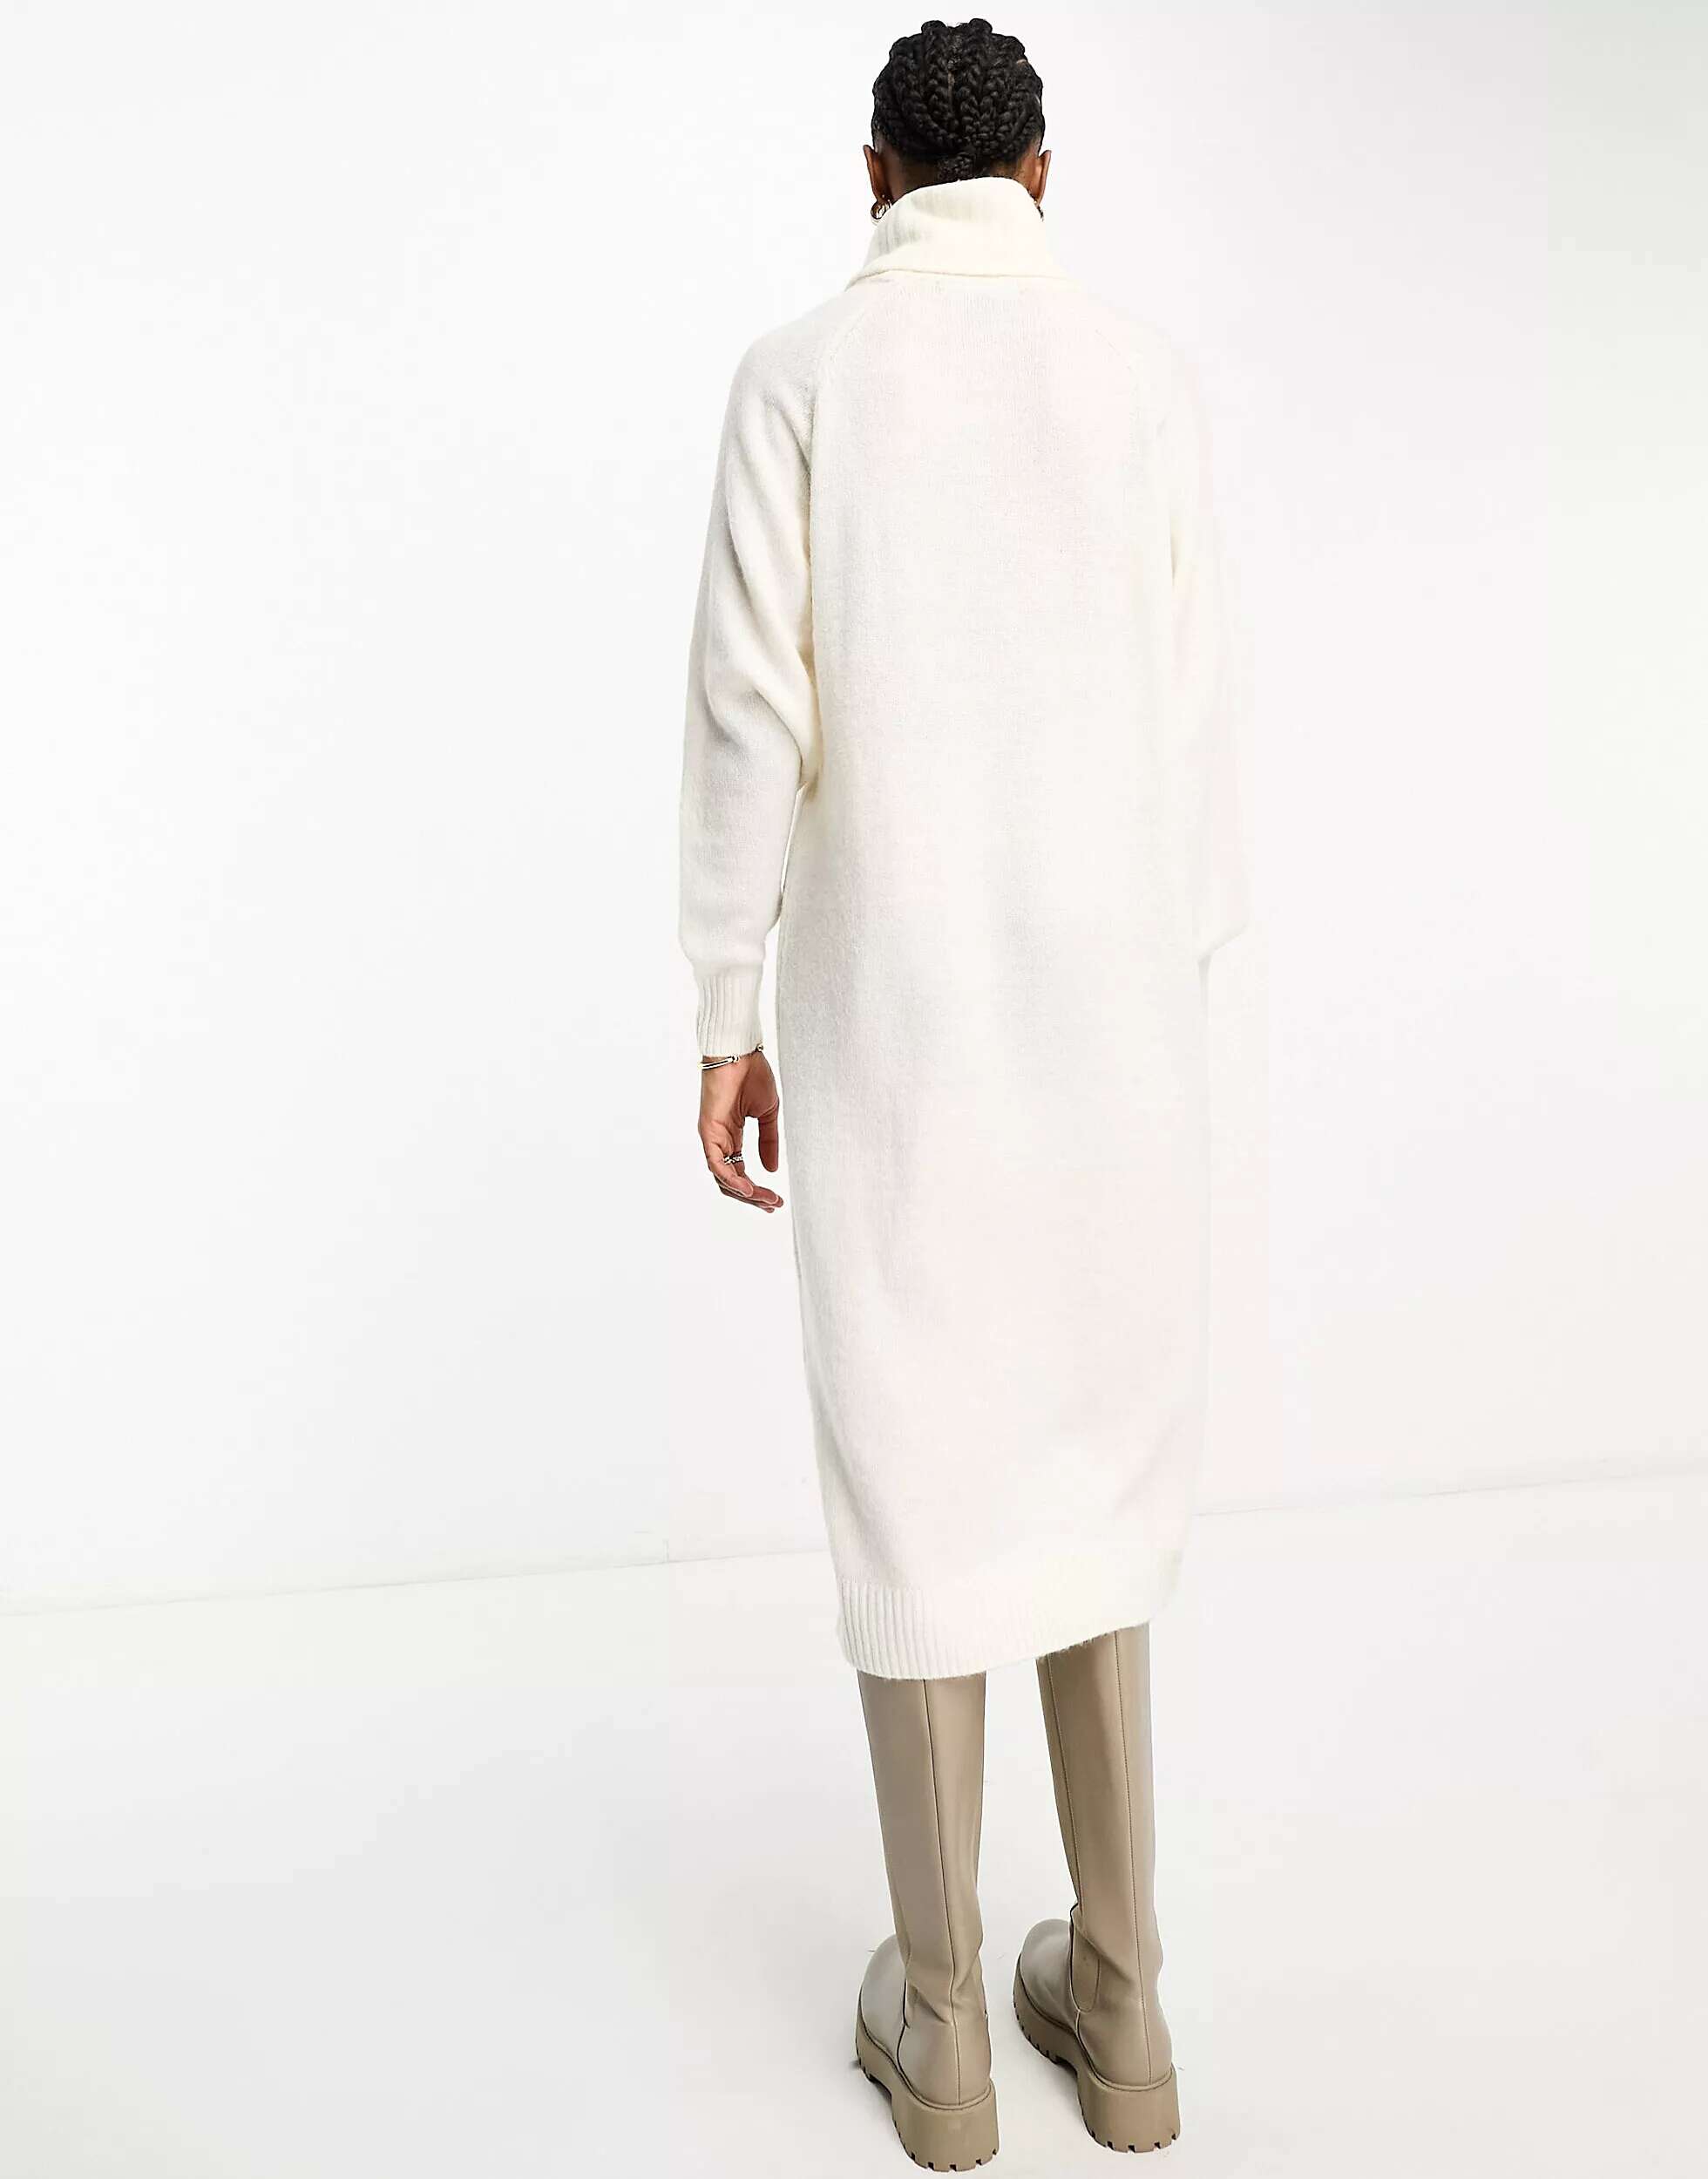 Кремовое вязаное платье макси Vero Moda с высоким воротником